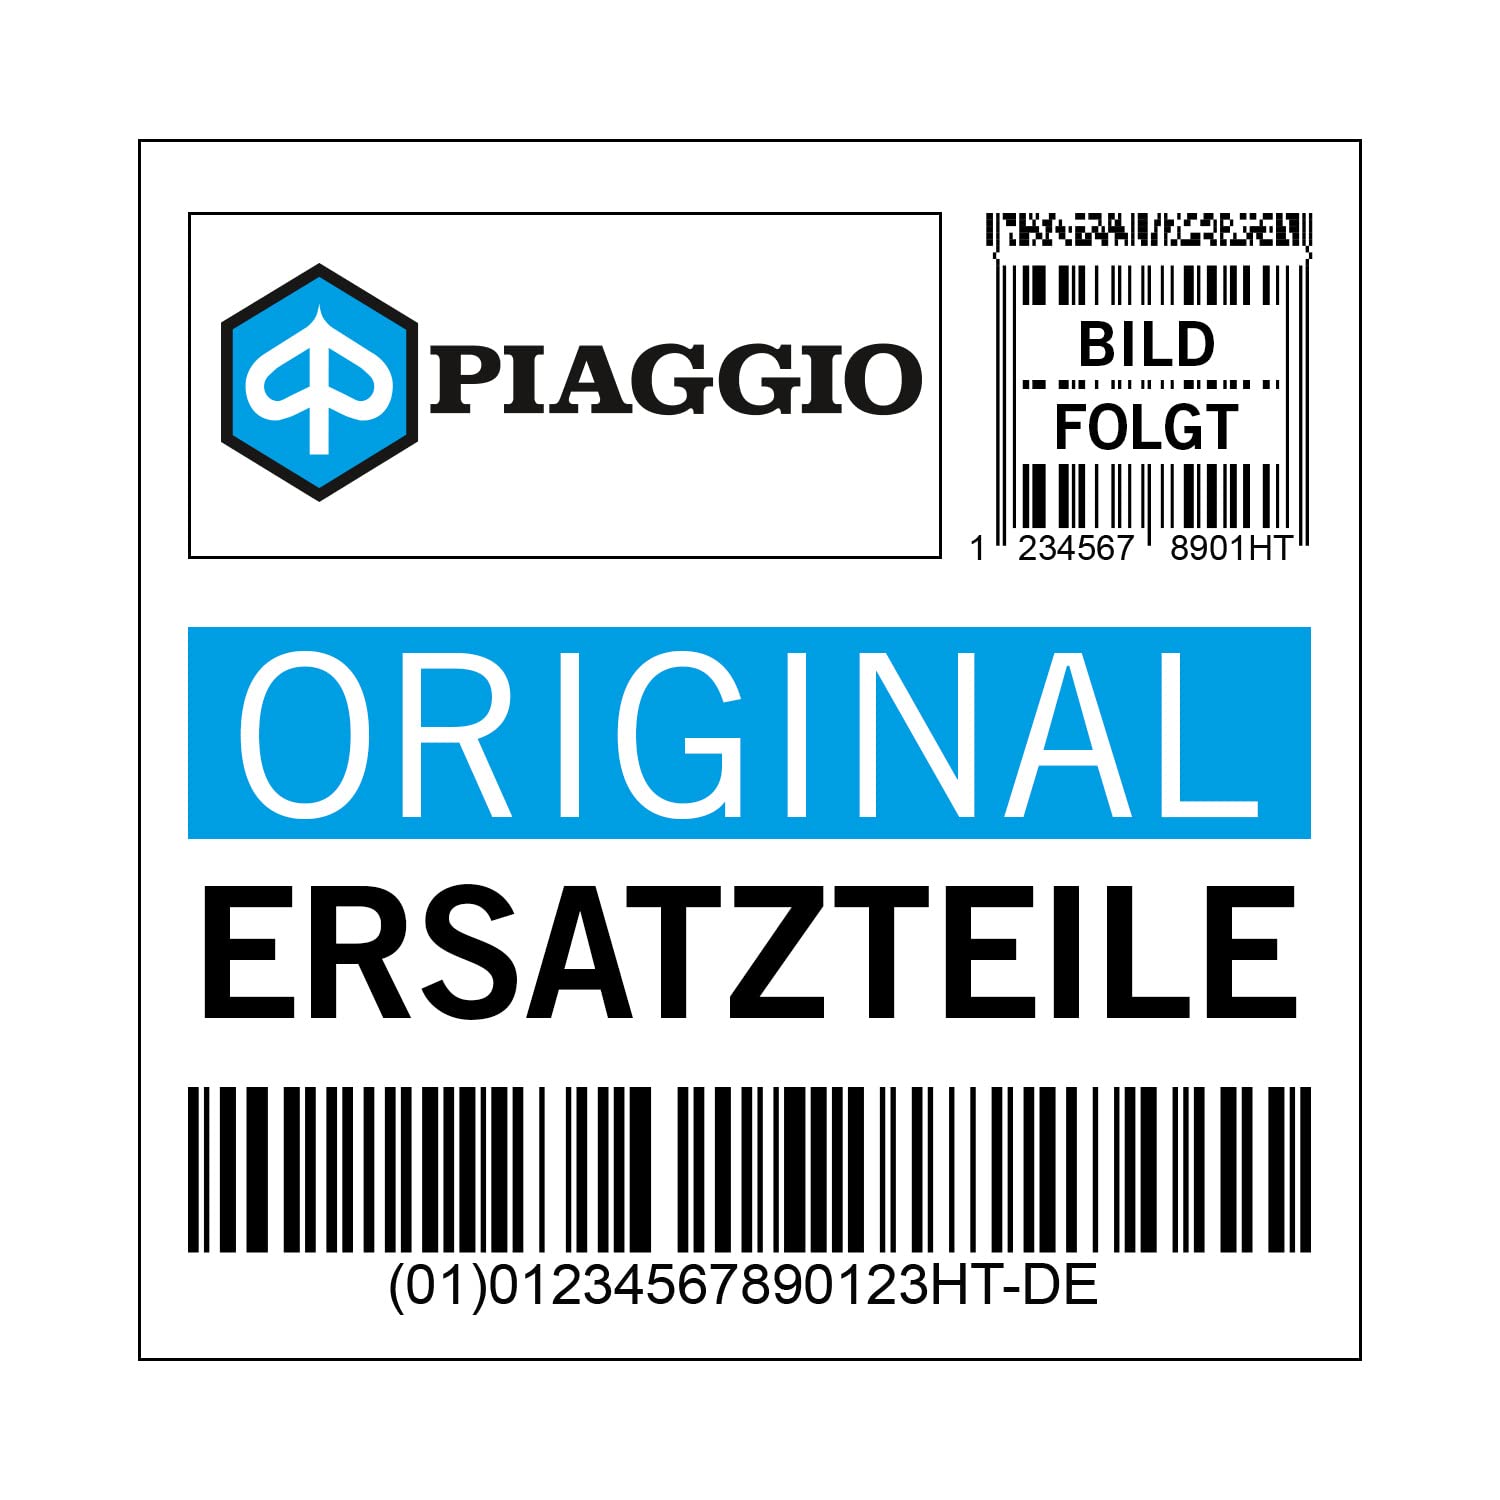 Emblem Piaggio, B025128 von Maxtuned